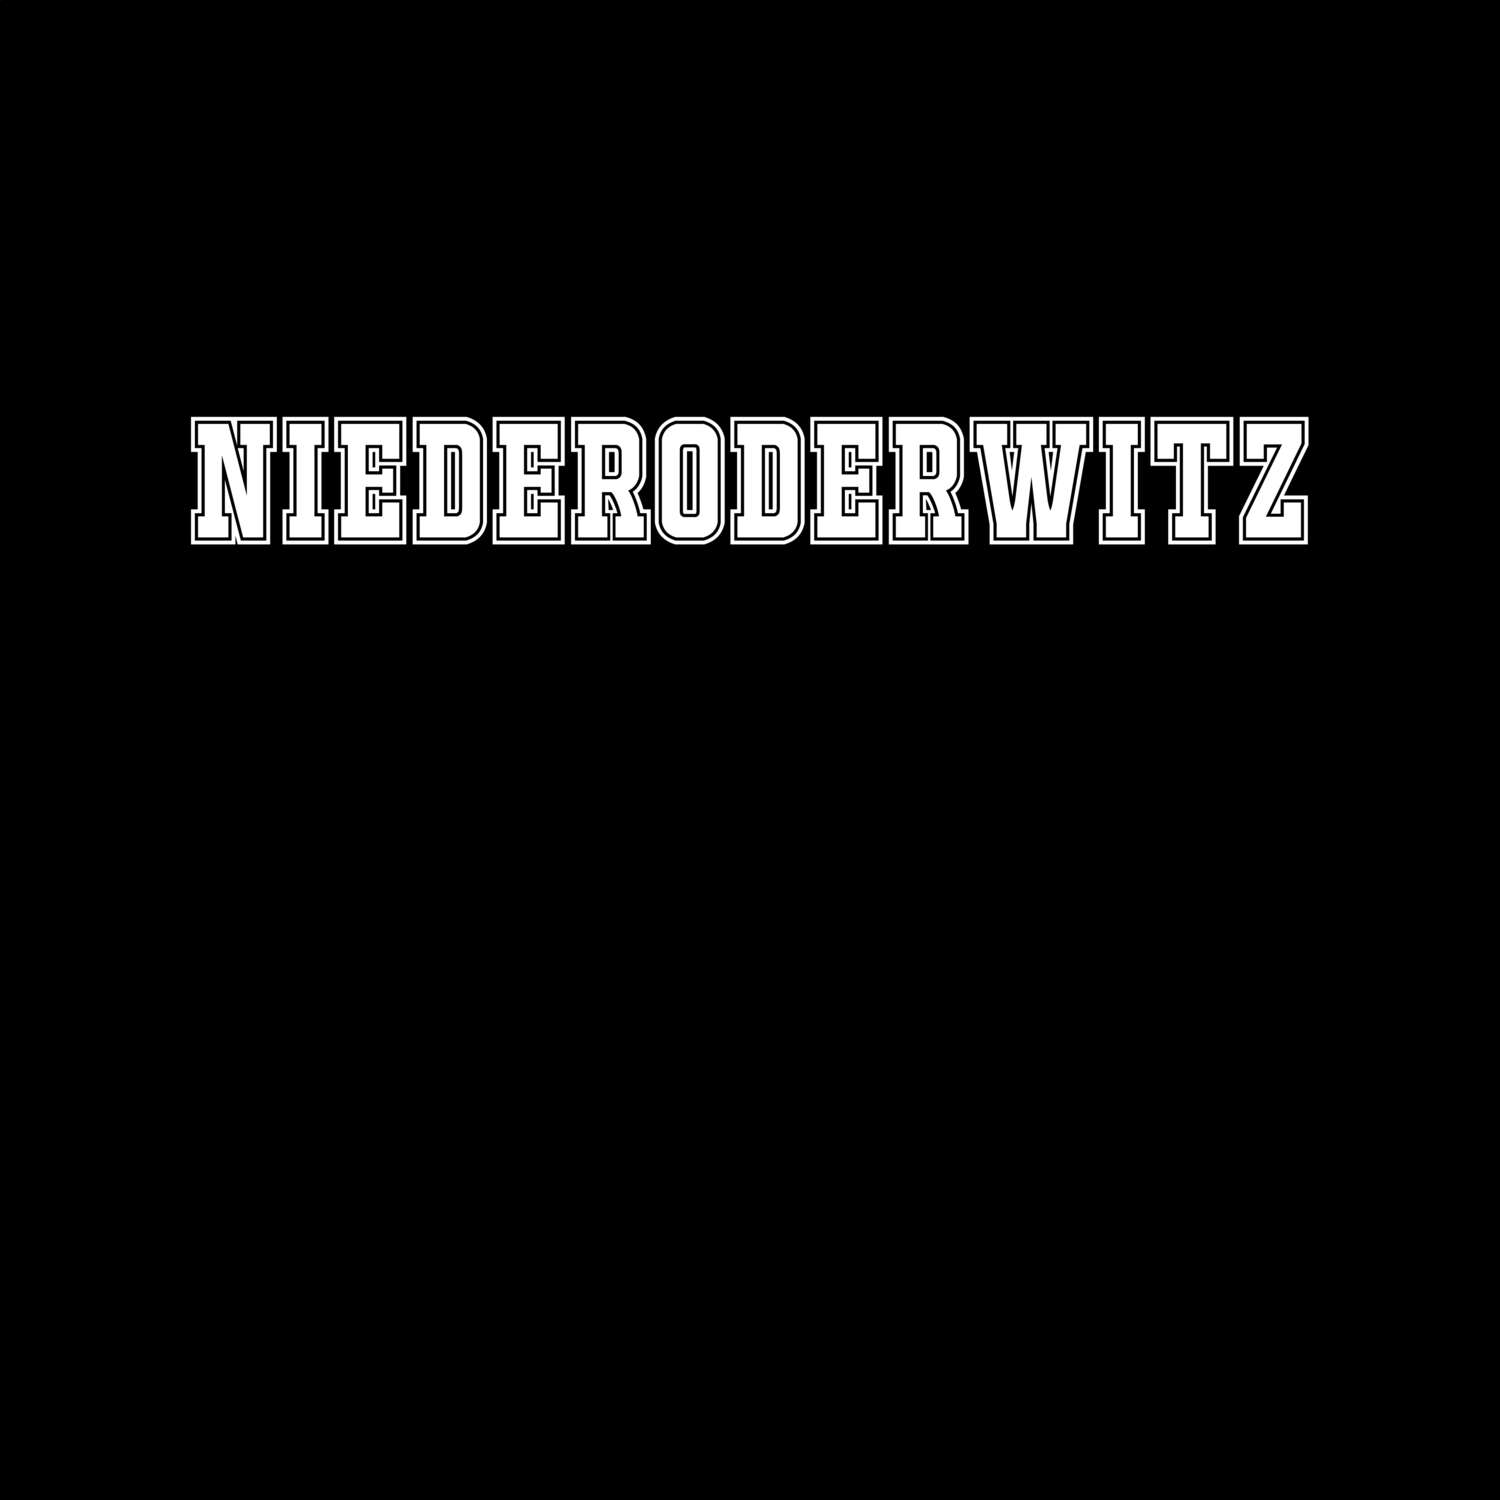 Niederoderwitz T-Shirt »Classic«